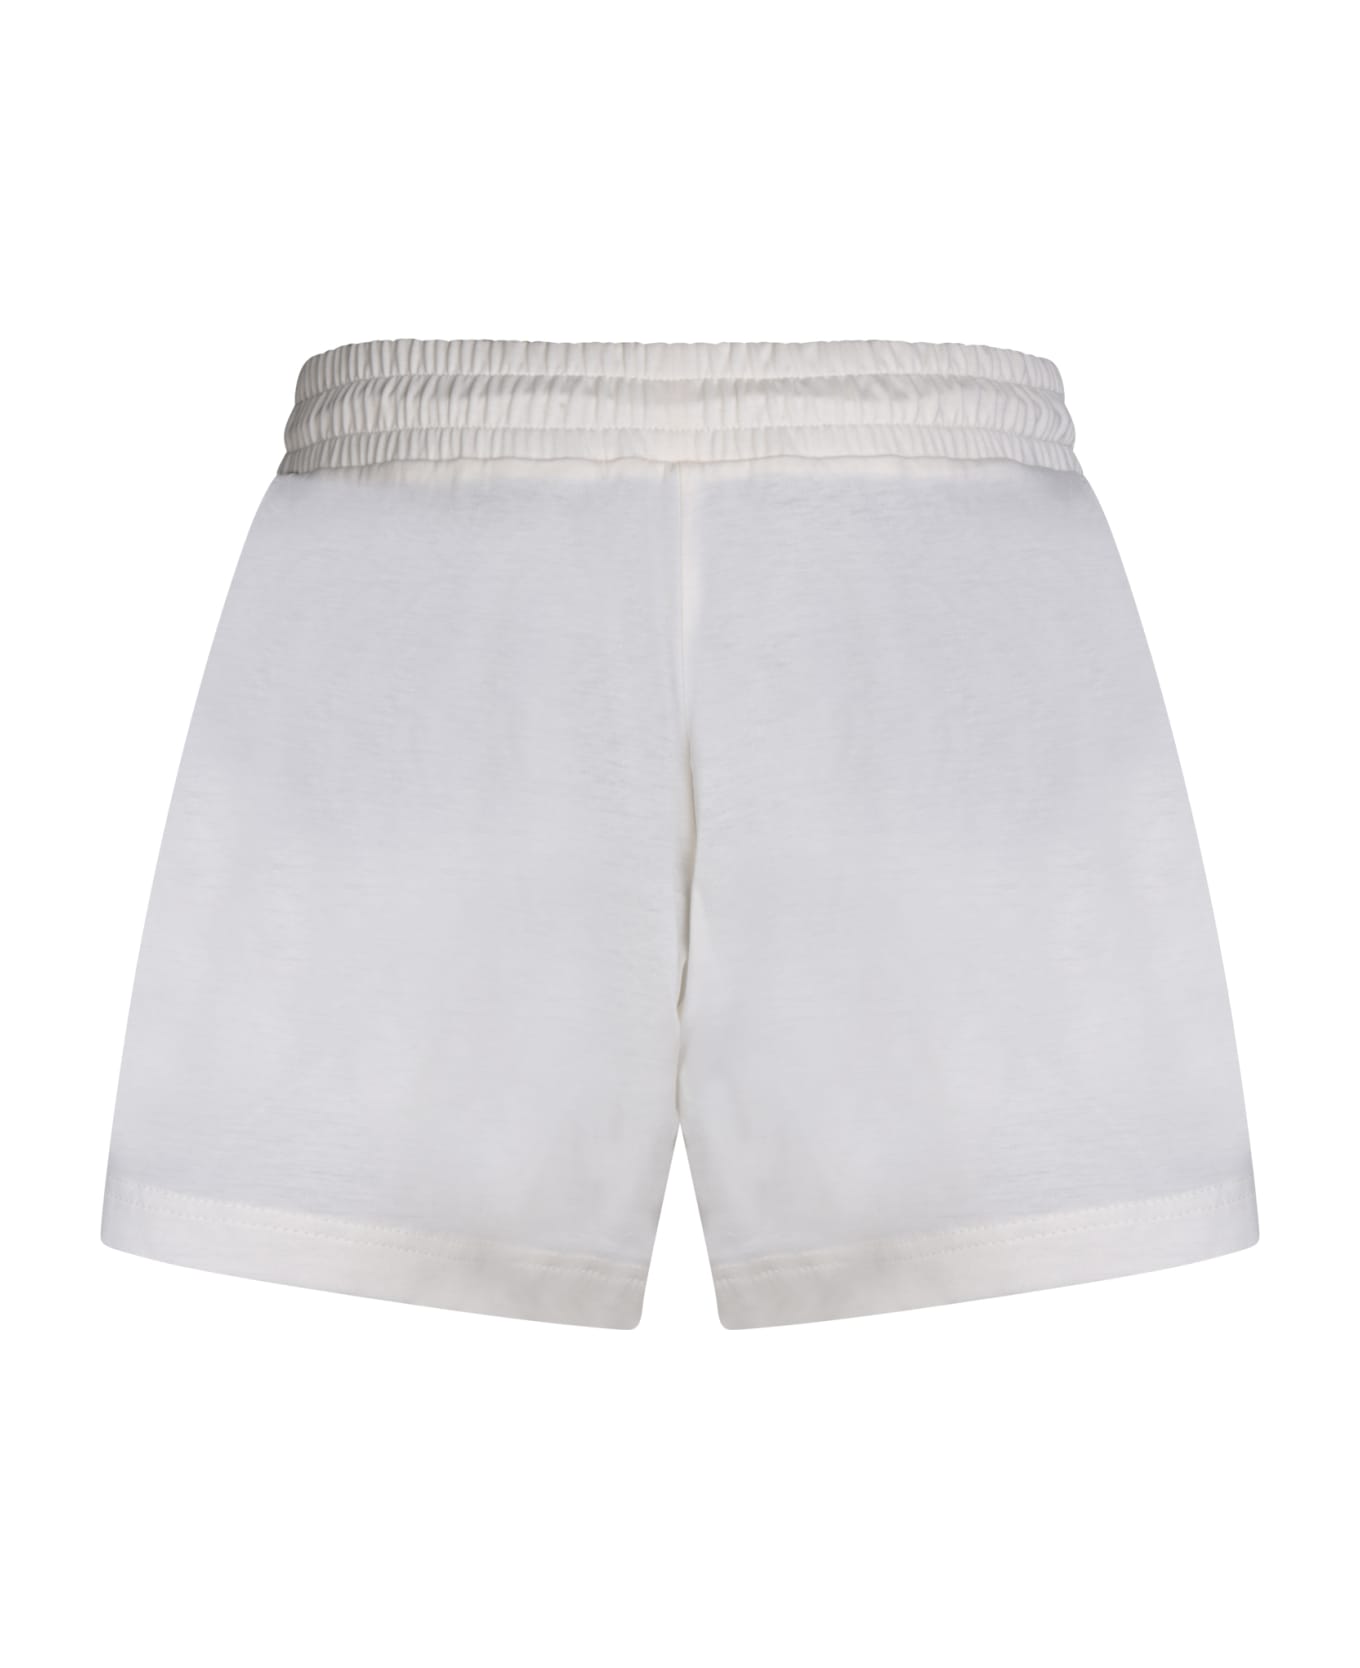 Moncler White Shorts - White ショートパンツ